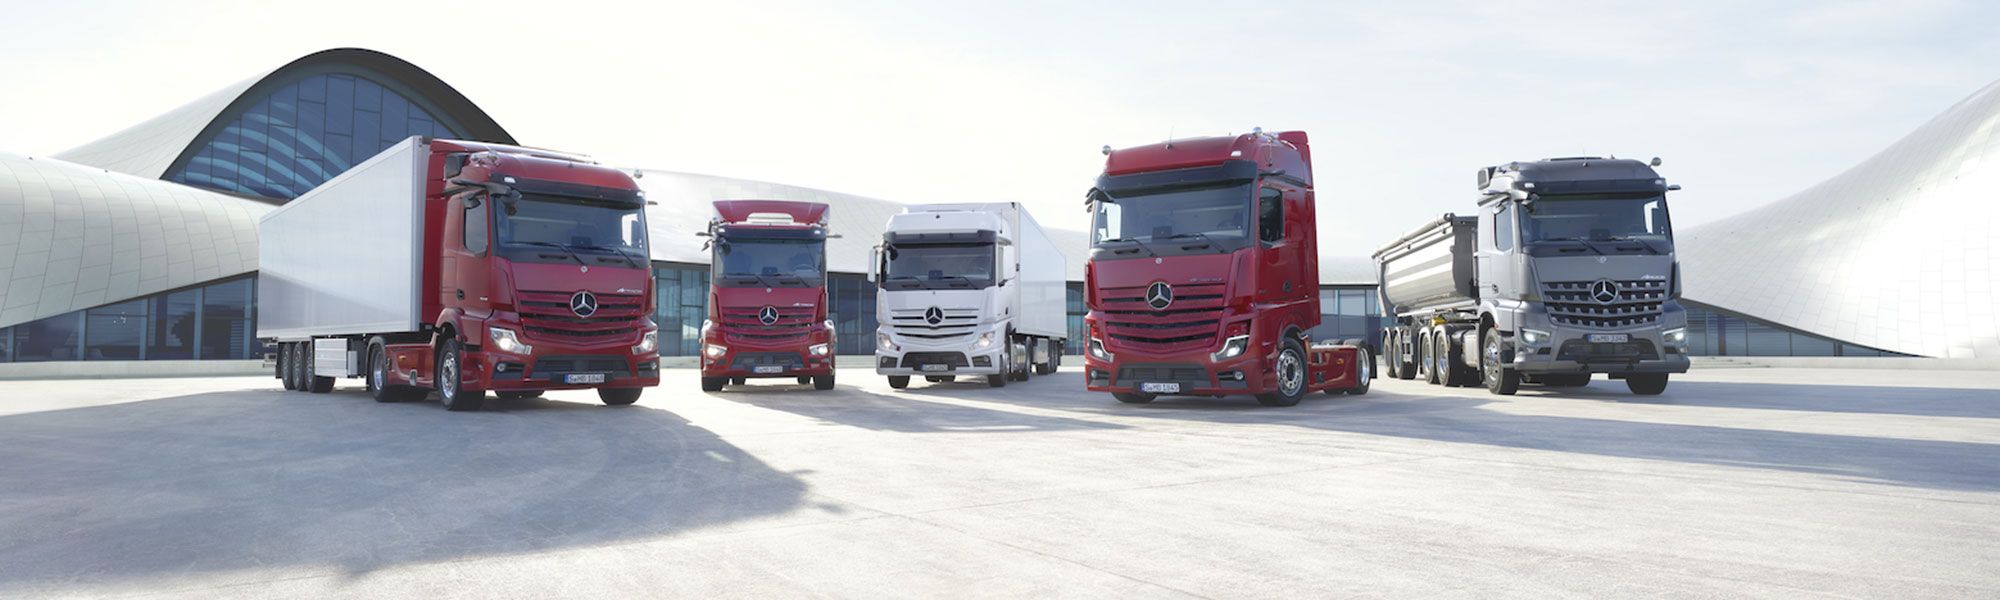 Autohaus SCHADE - Ihr TruckWorks Partner